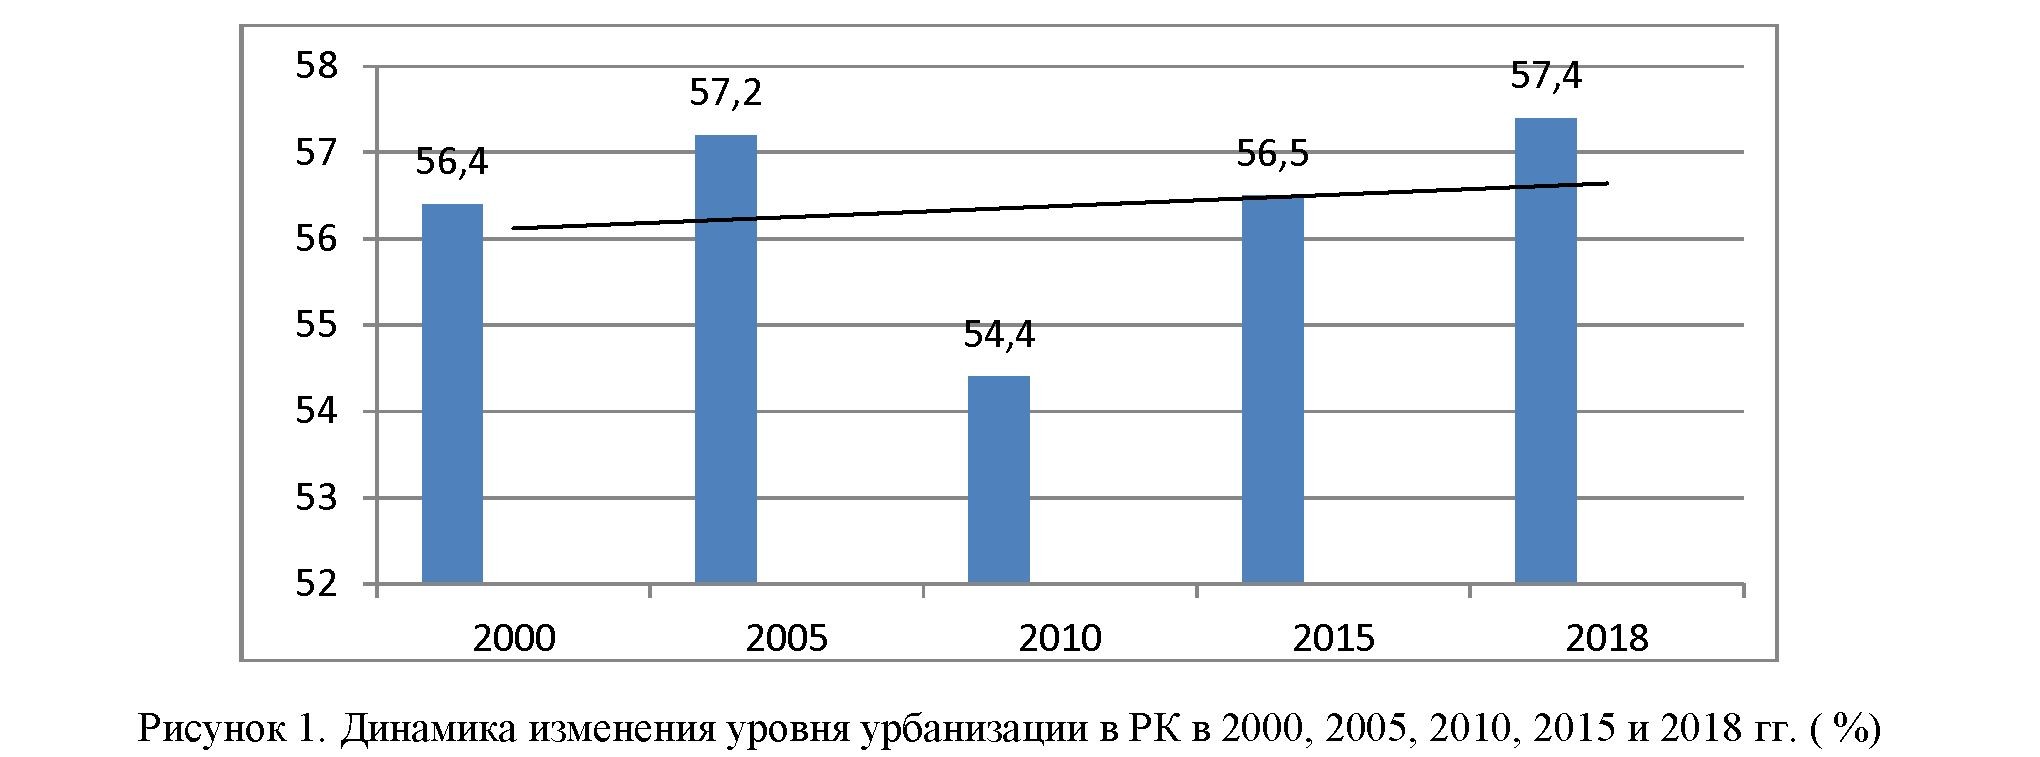 Урбанизация и динамика изменения численности городского населения в Казахстане в 2000–2017 гг.